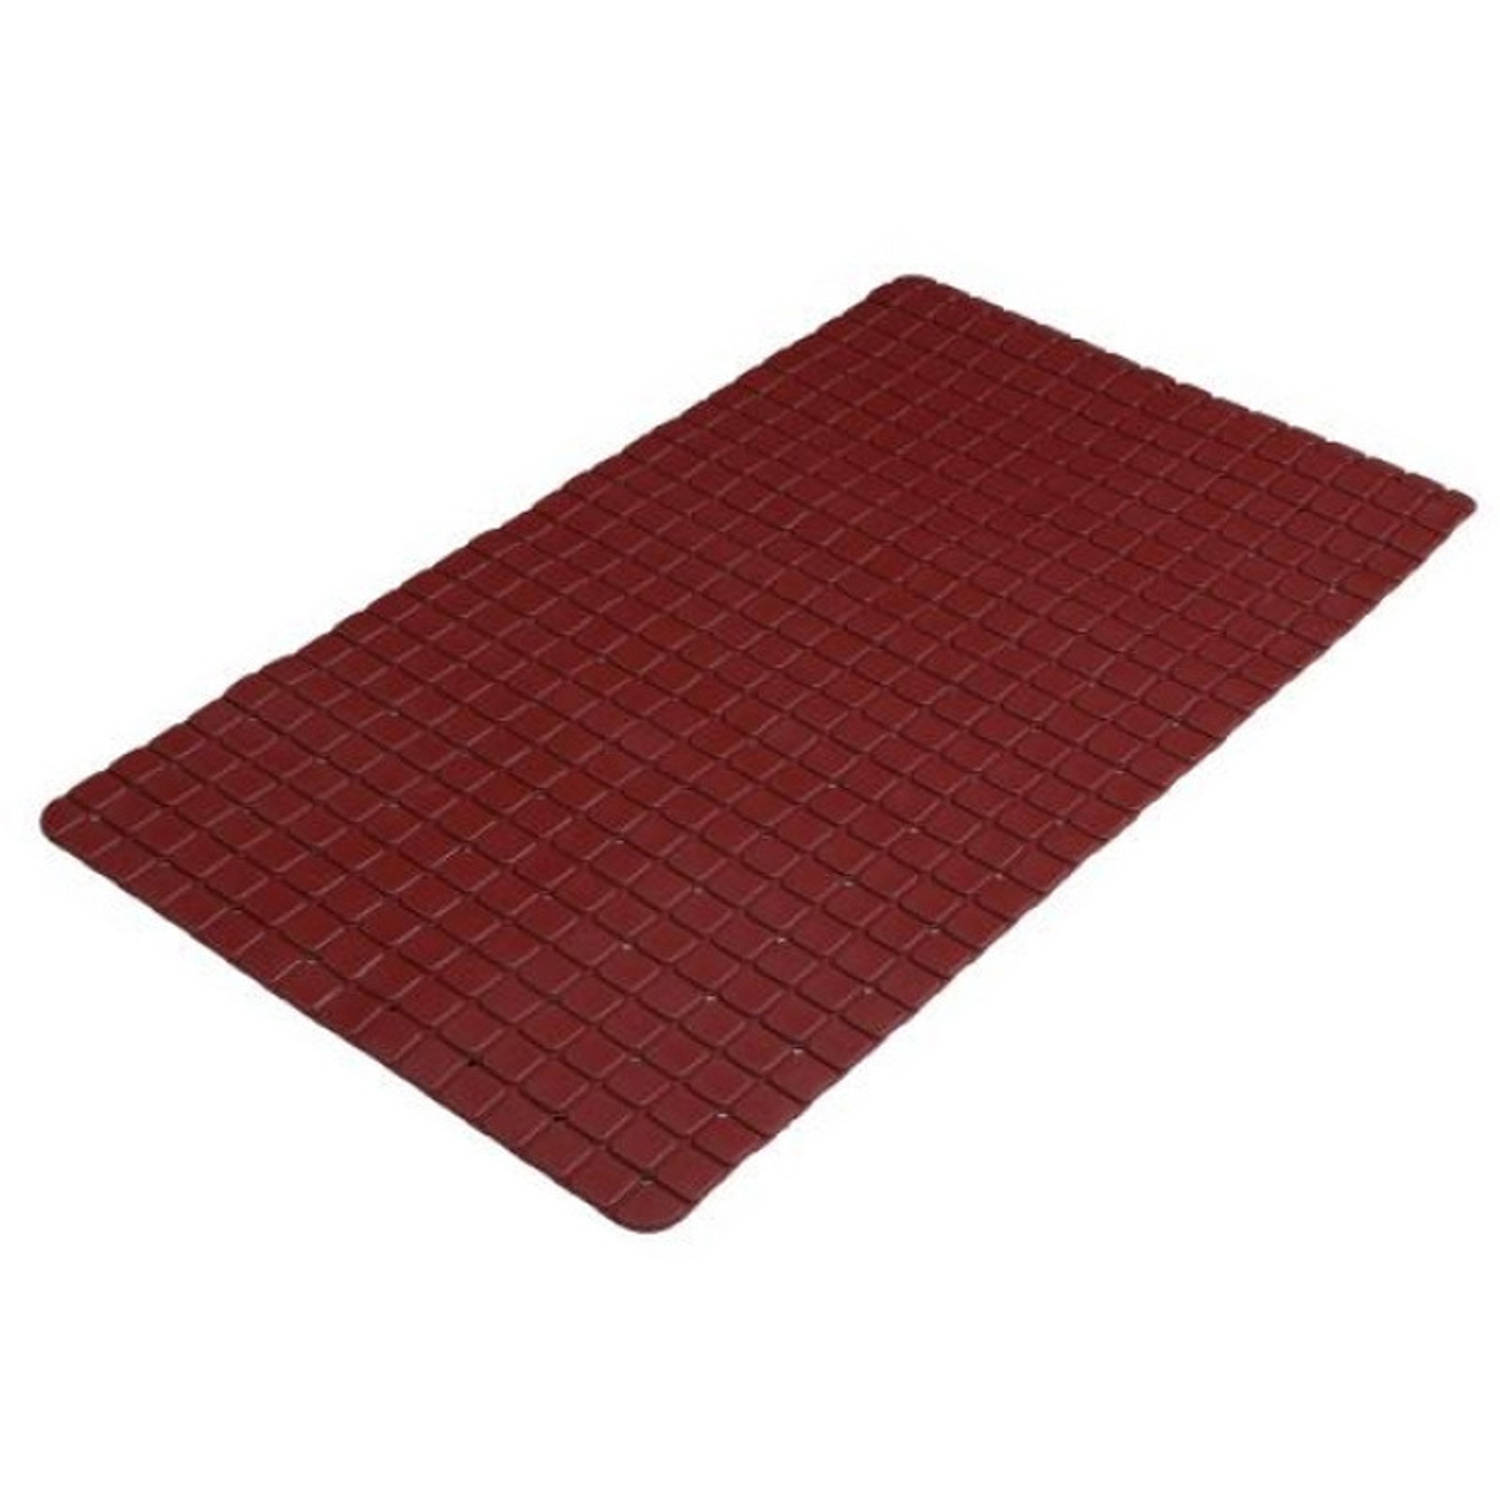 Urban Living Badkamer-douche anti slip mat rubber voor op de vloer donkerrood 39 x 69 cm Badmatjes